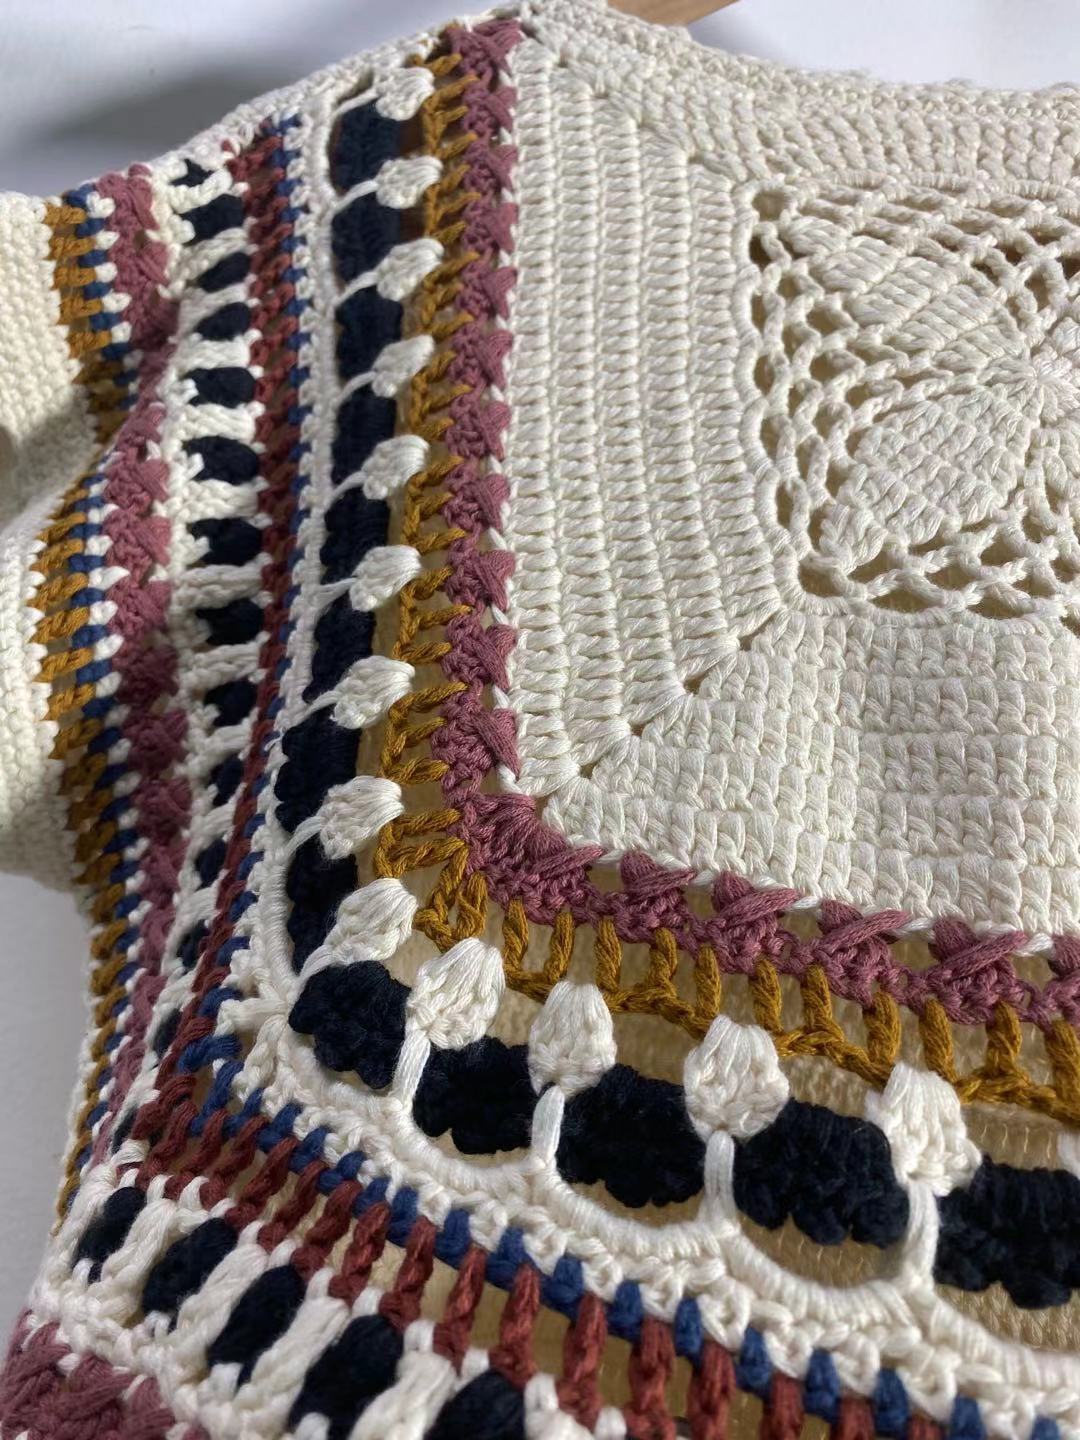 Heavy Industry Crochet Knitted Pullover Vest Fancy Yarn Cotton